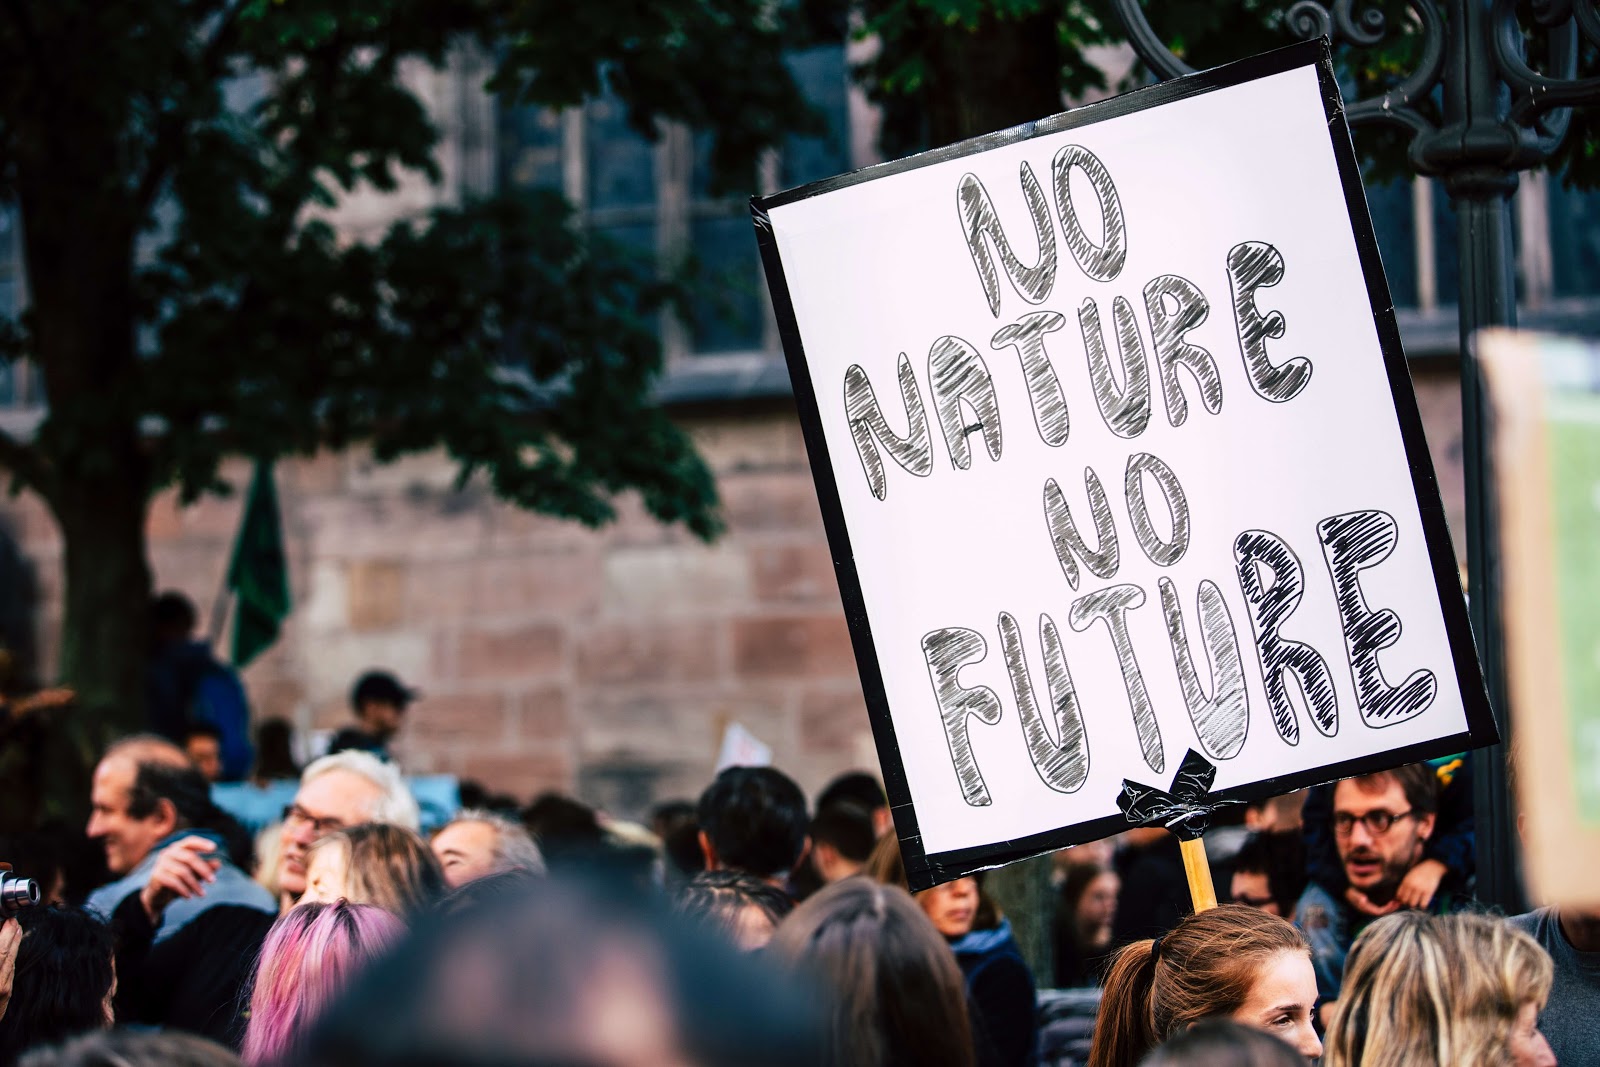 Protestujący z transparentem z napisem "Bez natury nie maprzyszłości"